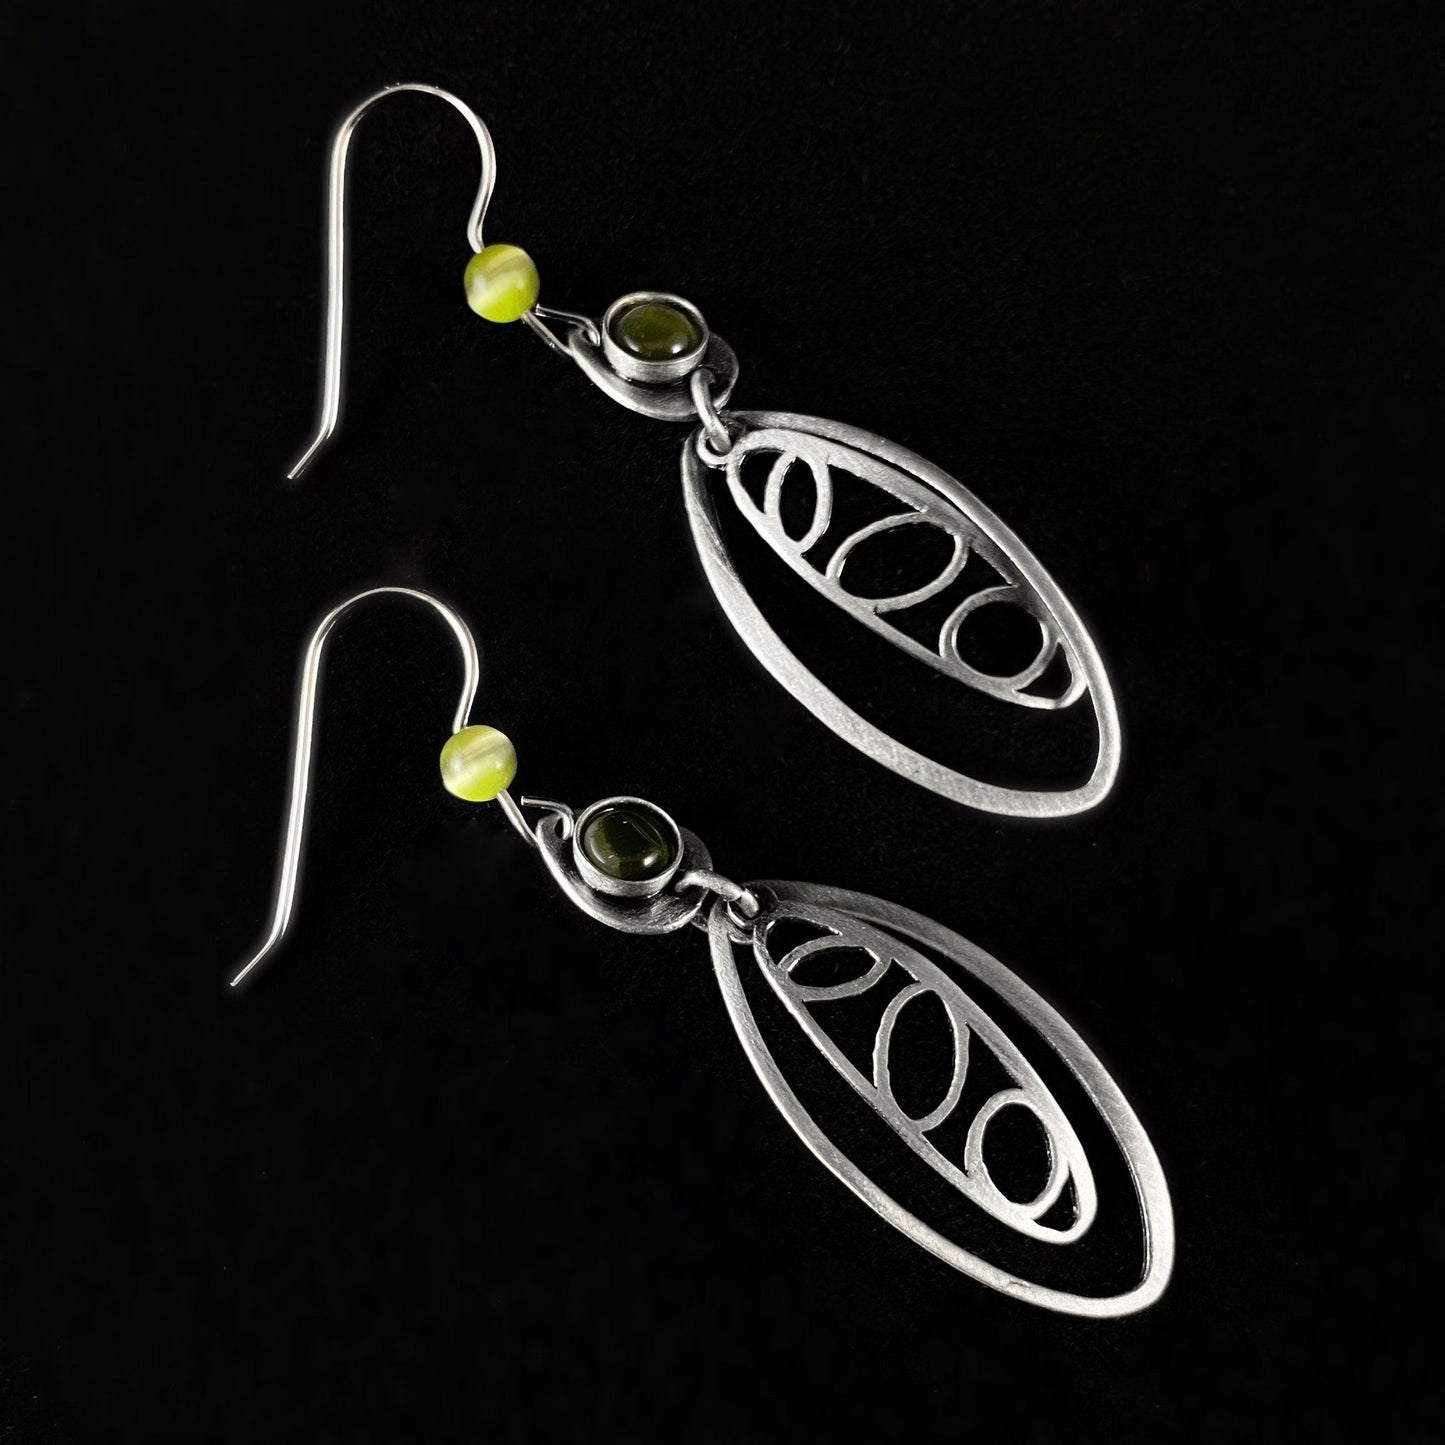 Lightweight Handmade Geometric Aluminum Earrings, Green Ovals